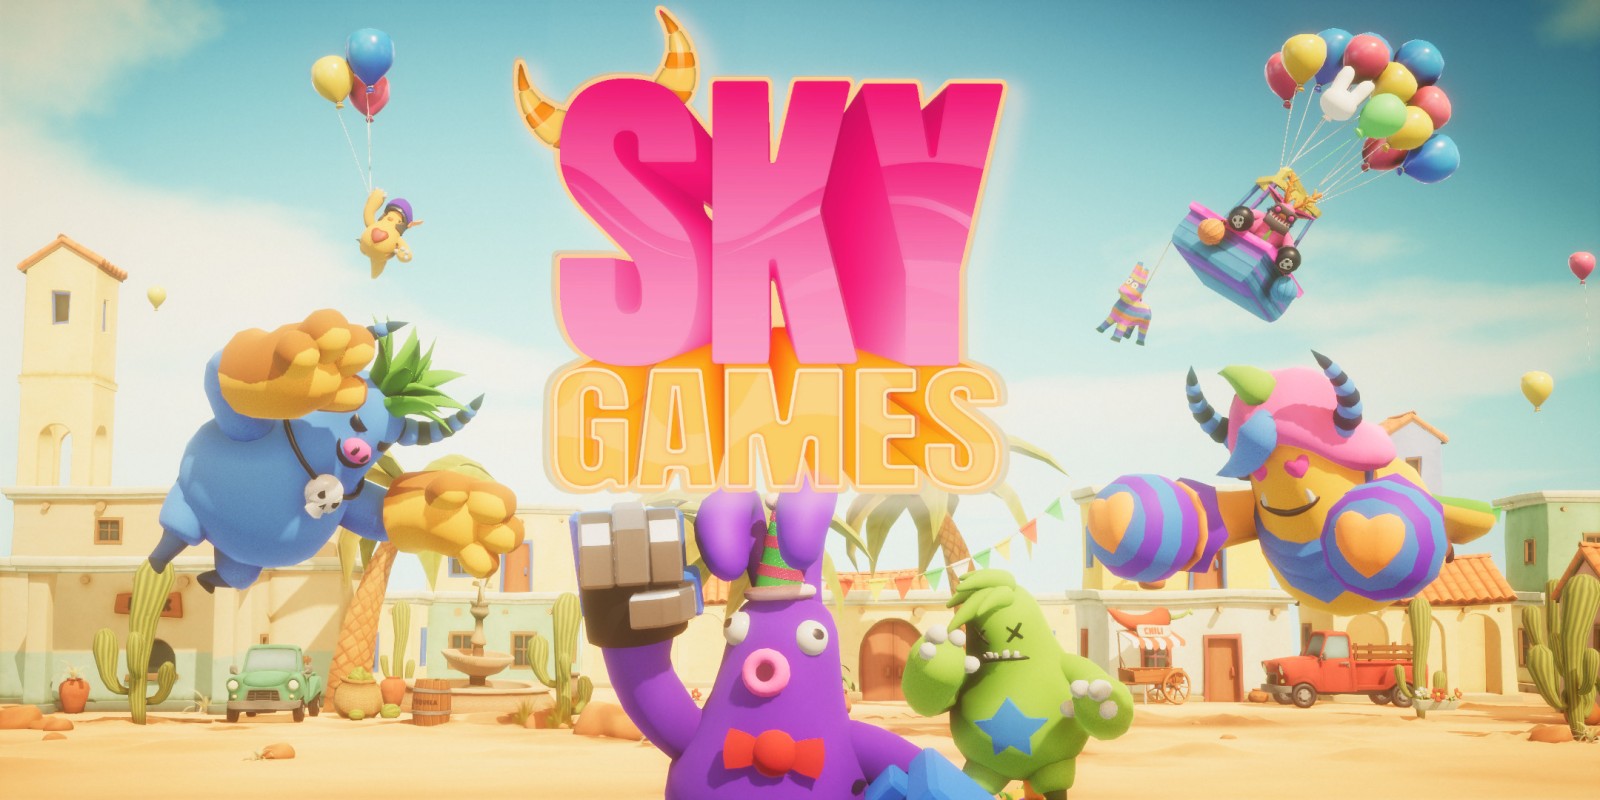 Sky Games